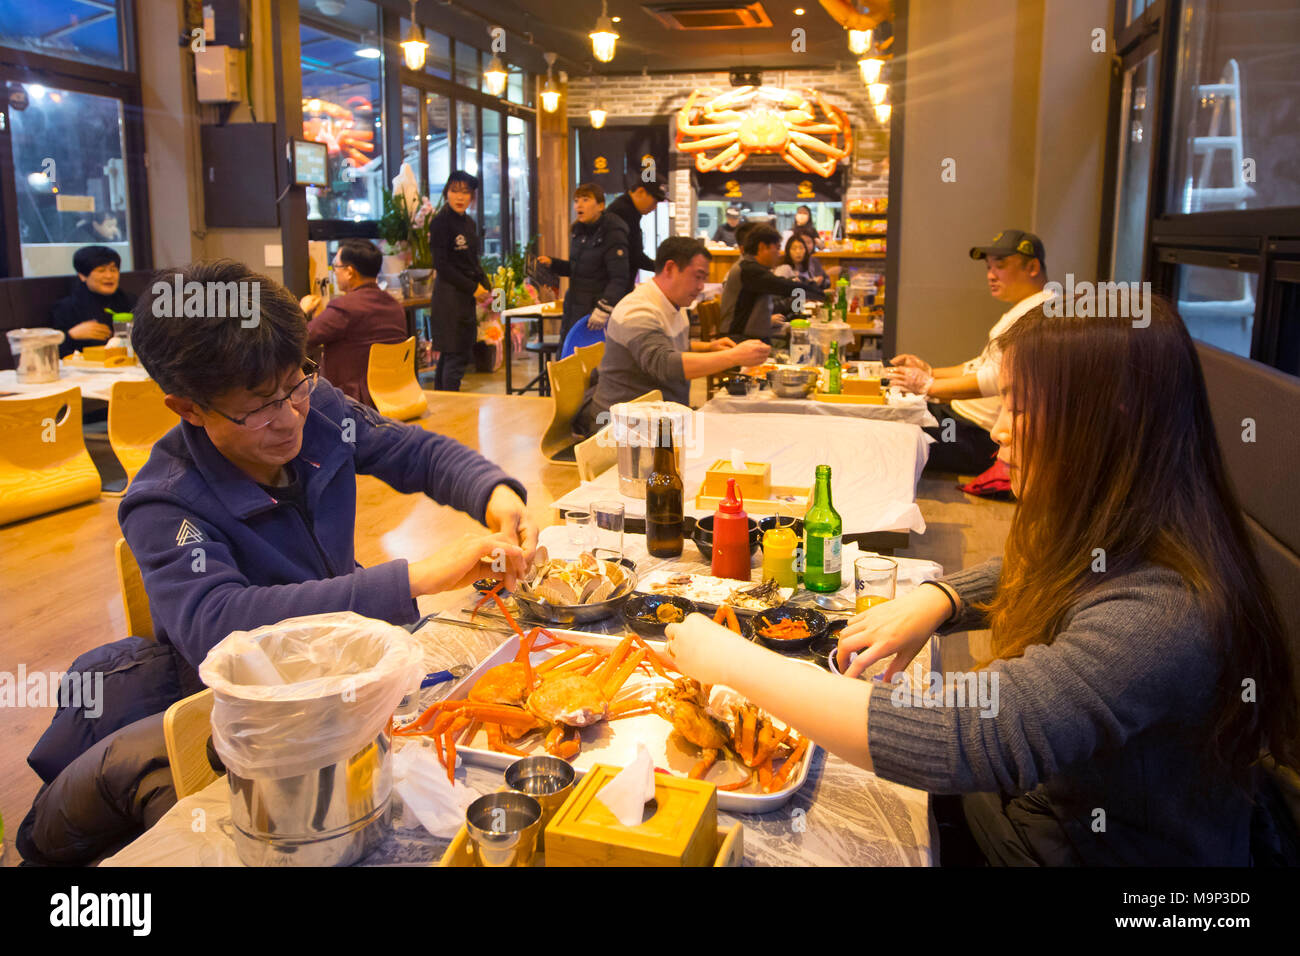 Koreanische Leute essen Seespinne in einem Restaurant in Sokcho, eine lebendige Stadt an der Küste der Ostsee in Südkorea. Seespinne ist eine lokale Meeresfrüchte Spezialitäten dieser Region. Sokcho befindet sich in der Nähe der Seoraksan Nationalpark und ein beliebtes Touristenziel. Es hat besonders attraktiv für koreanische Volk seit seiner Erscheinung in der beliebten K-Drama Winter Sonata. In der Nähe Pyeongchang wird Gastgeber der Olympischen Winterspiele im Februar 2018. Stockfoto